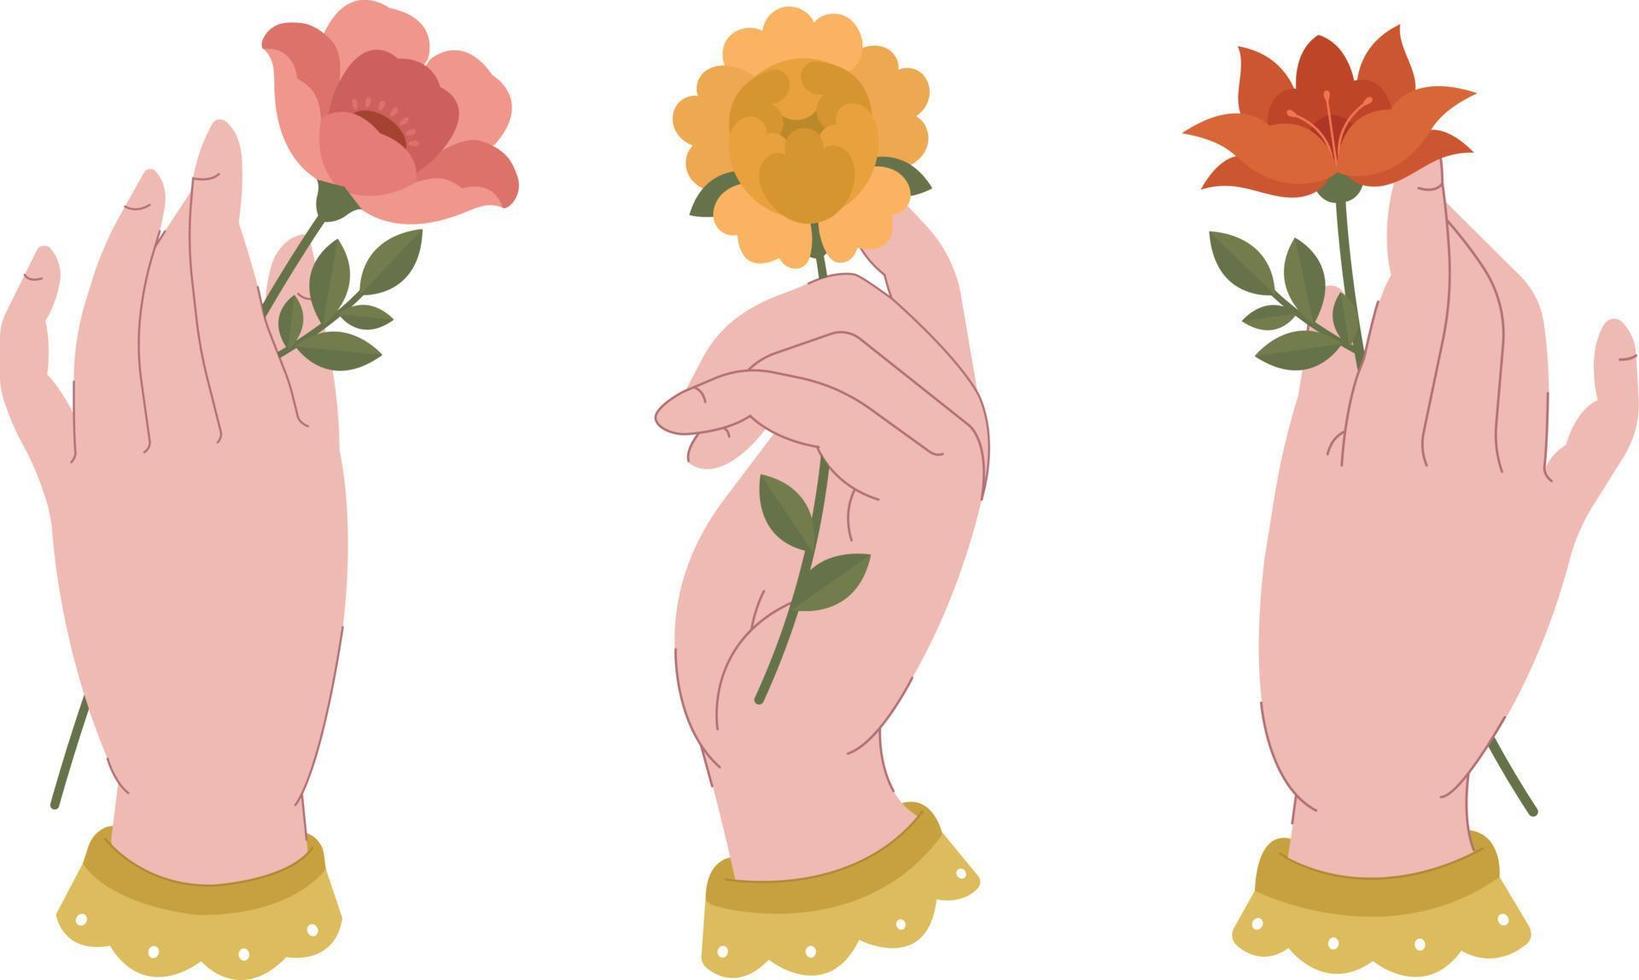 conjunto de manos femeninas sosteniendo hermosas flores de primavera, aisladas sobre fondo blanco. estilo plano vectorial moderno vector